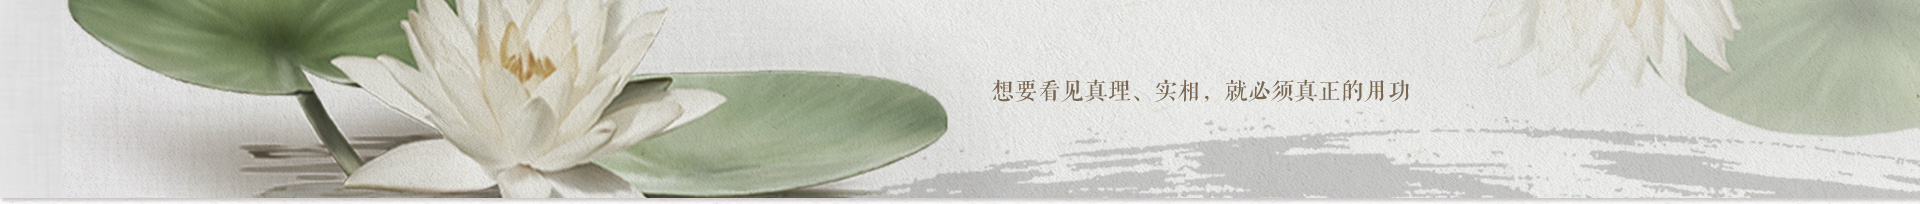 2012年9月22日-28日福建资国寺七日禅修法讯